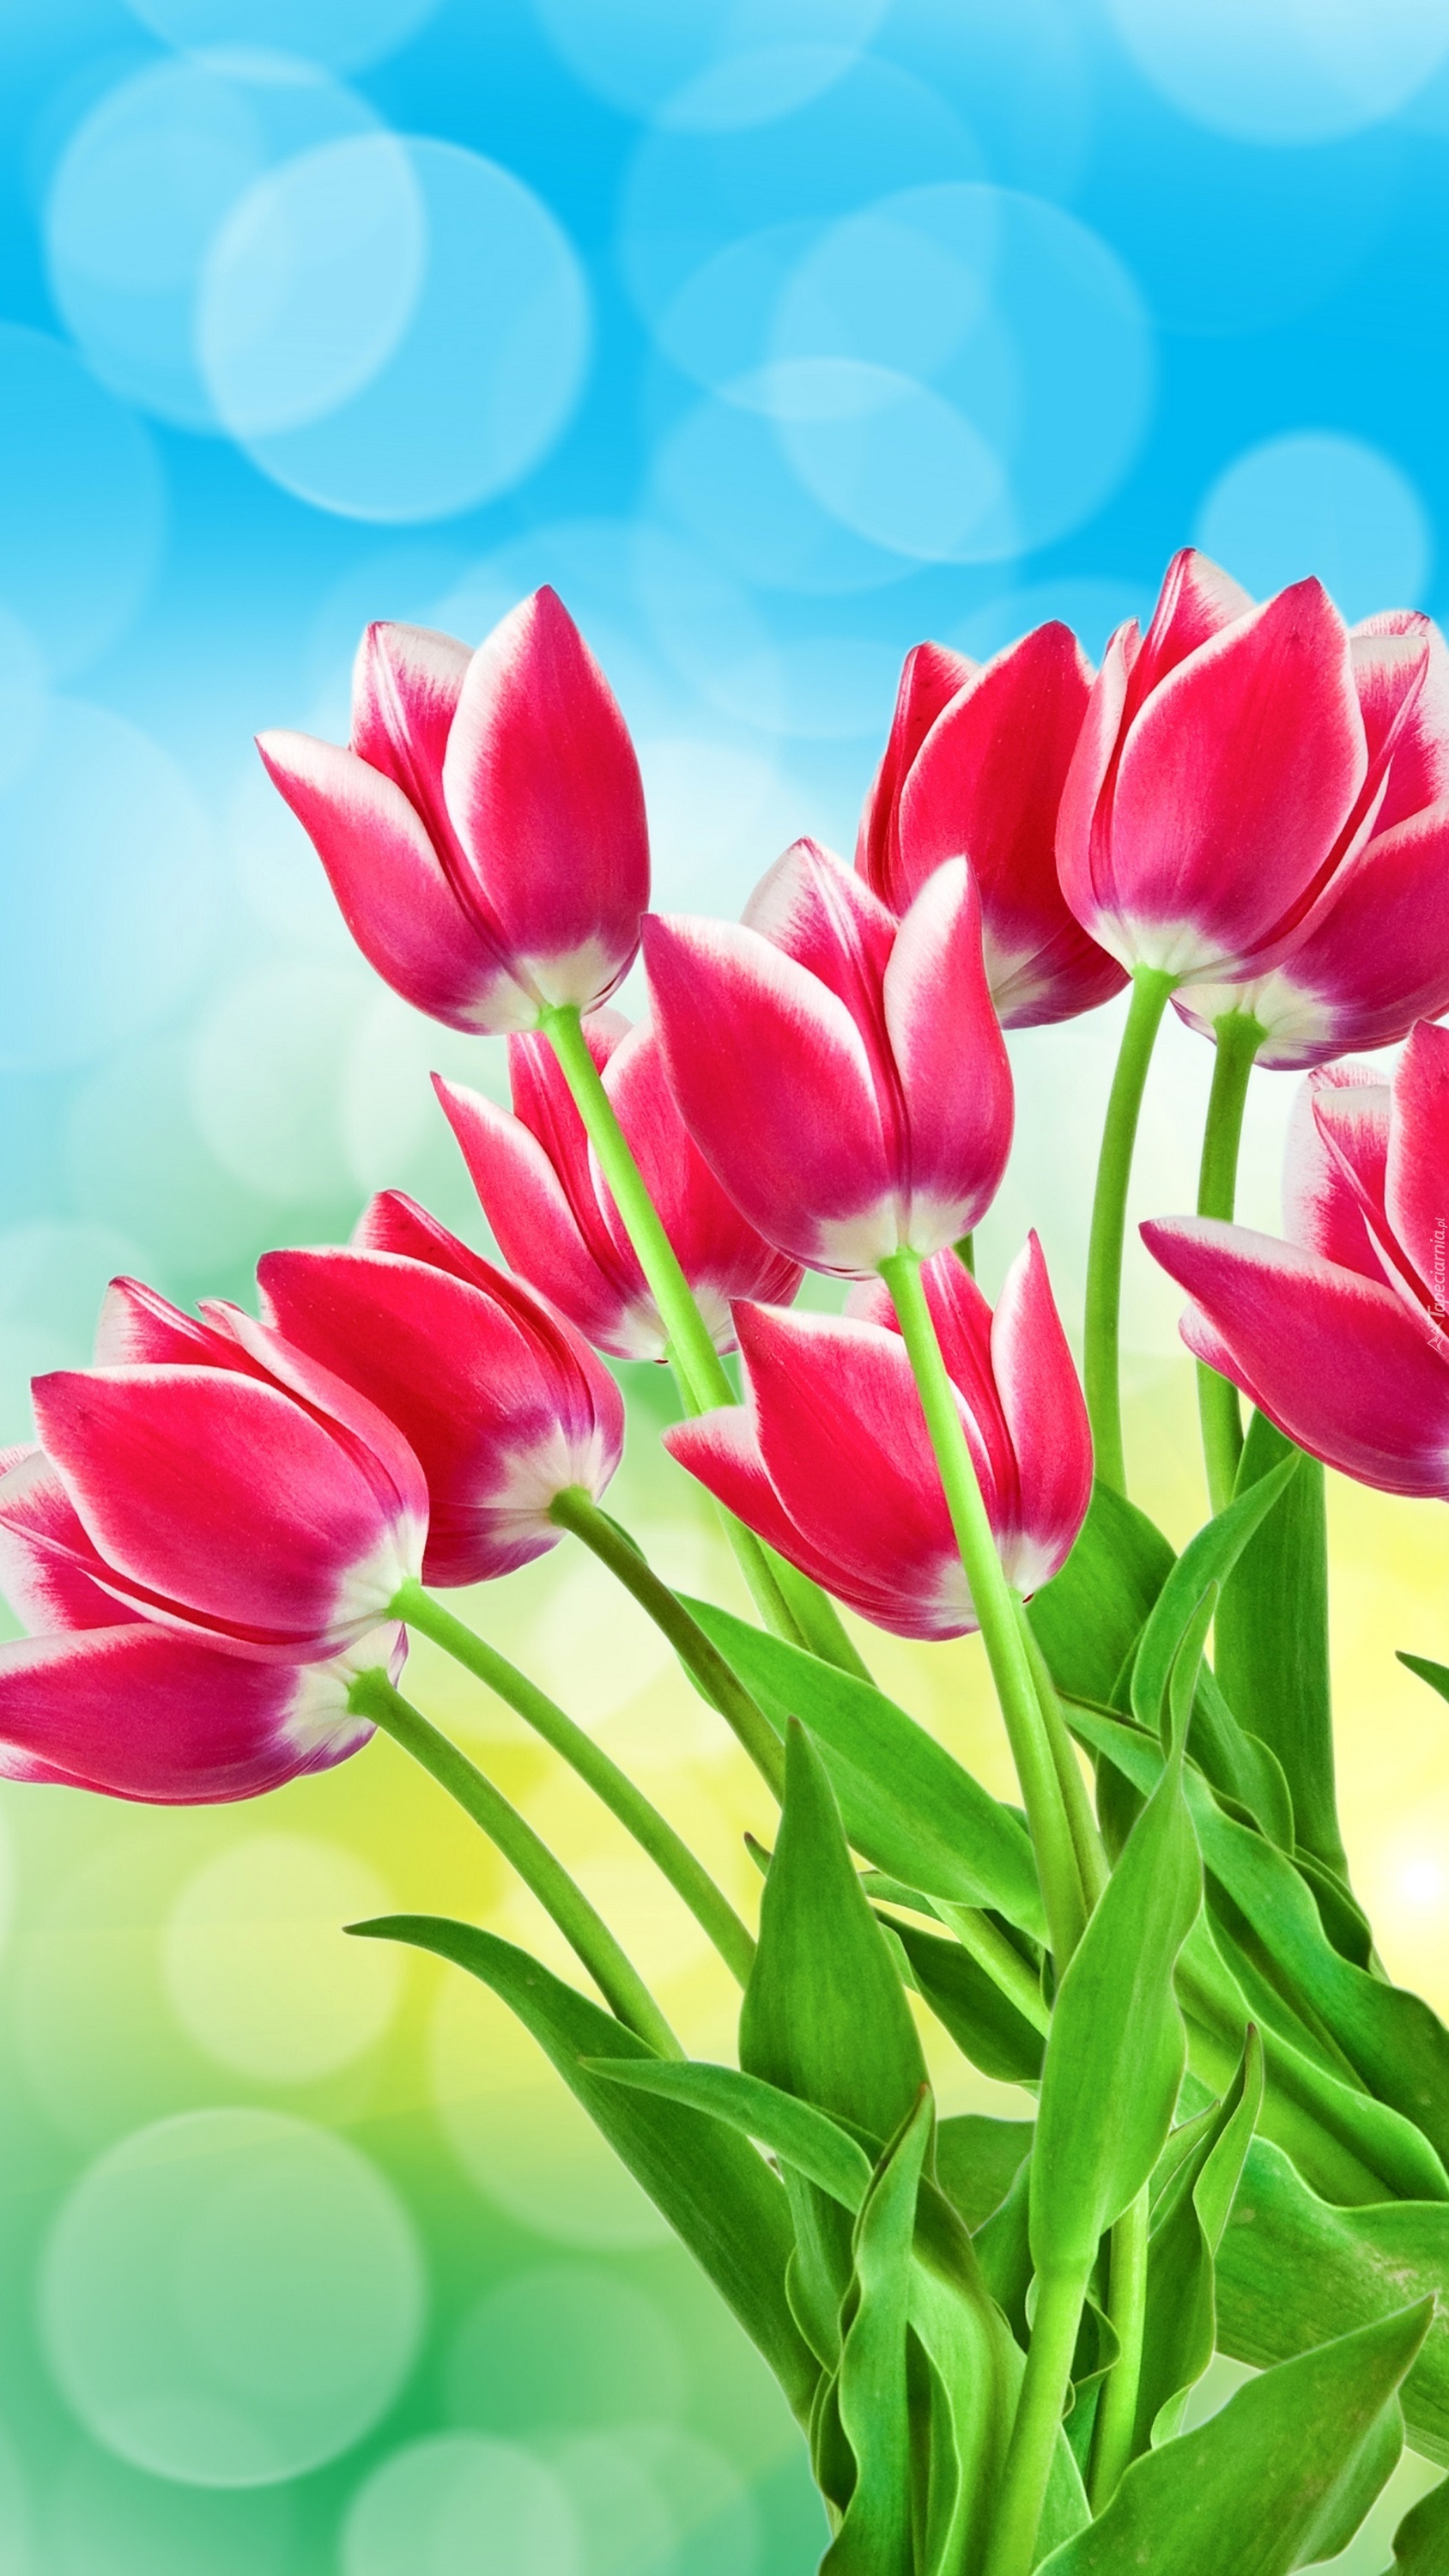 Biało-różowe tulipany w bukiecie